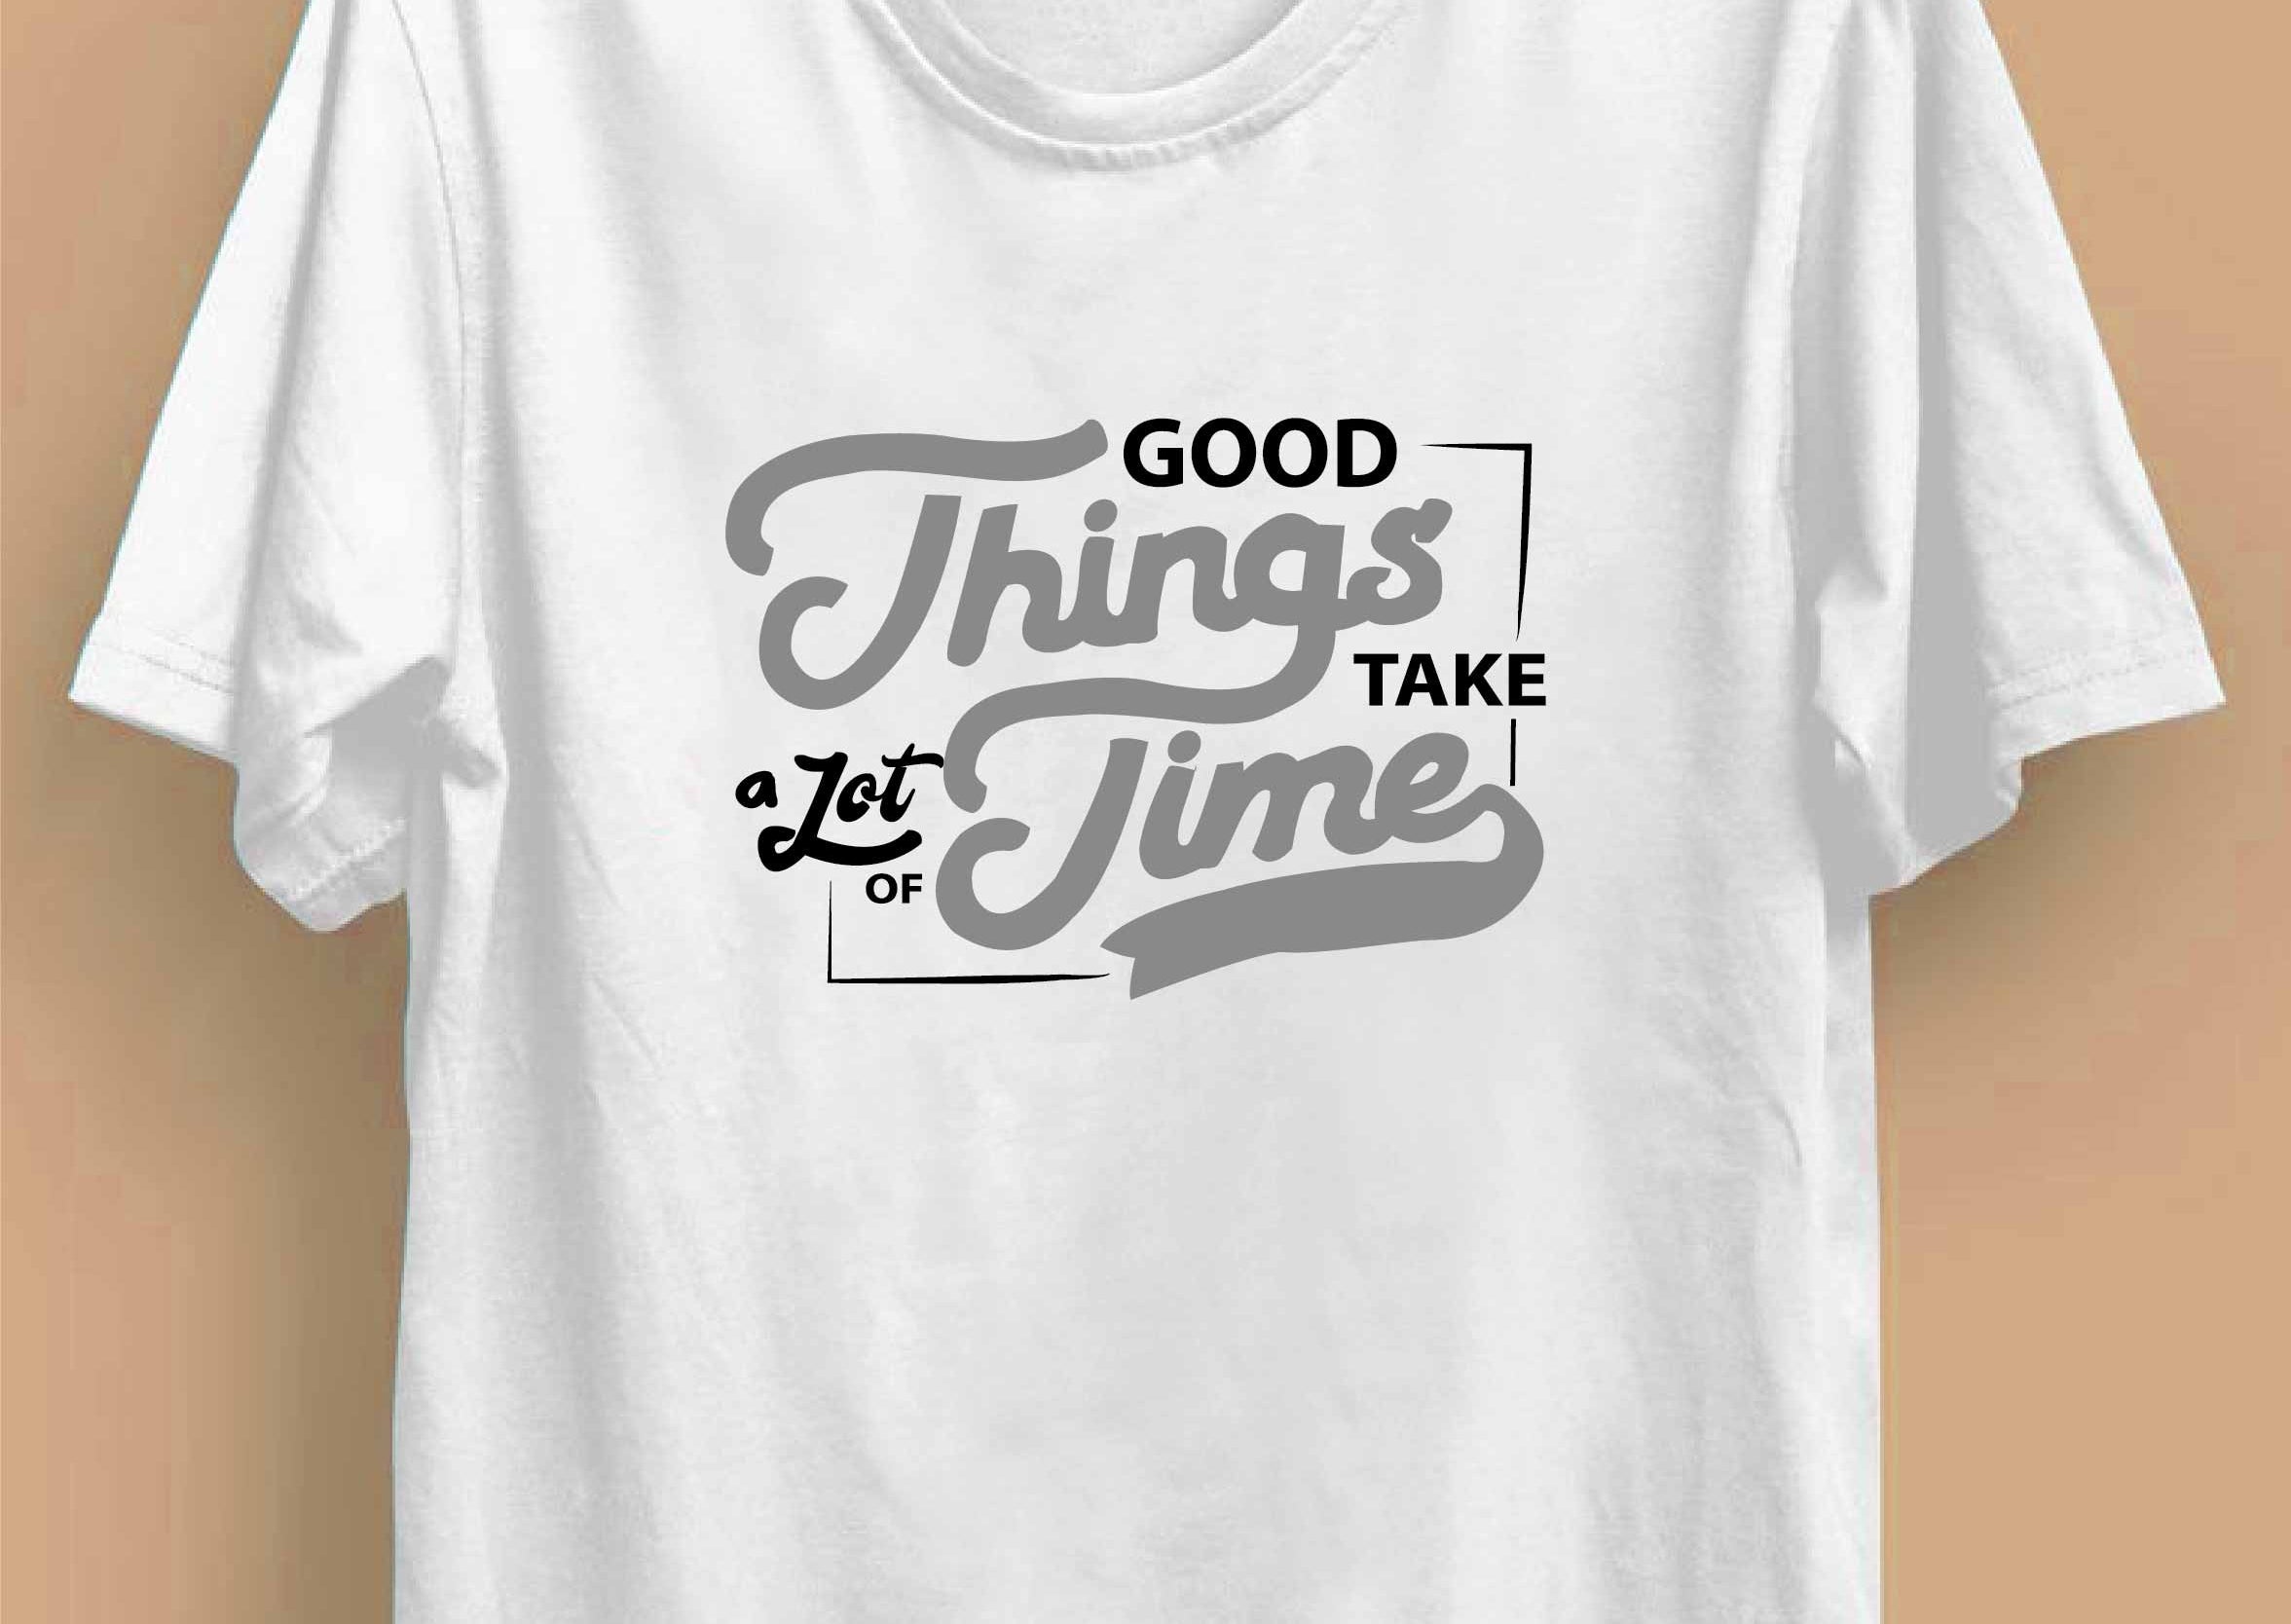 Good Things Take Time Reactr Tshirts For Men - Eyewearlabs